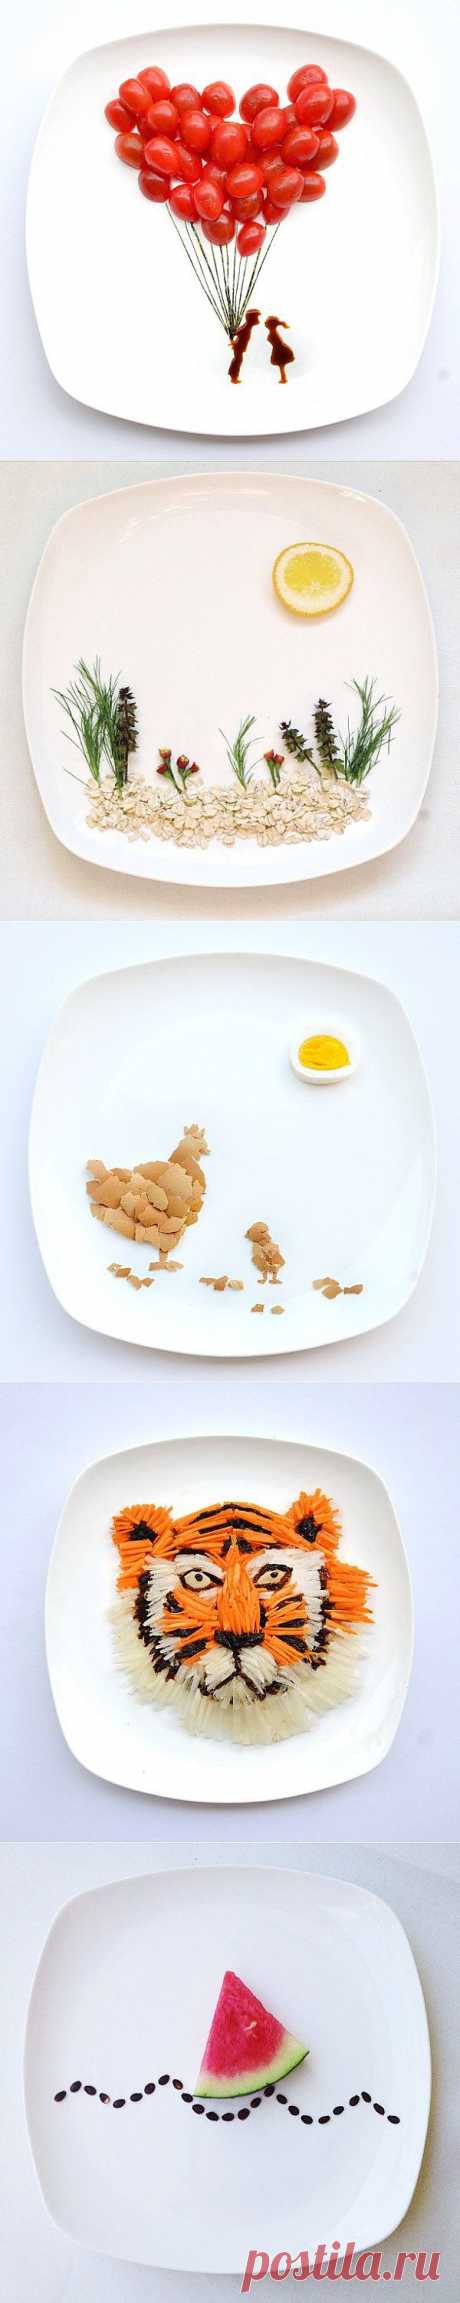 Картины из еды от художницы Hong Yi (8 фото) » Самые интересные факты. Интересные факты. Всё самое интересное в мире.